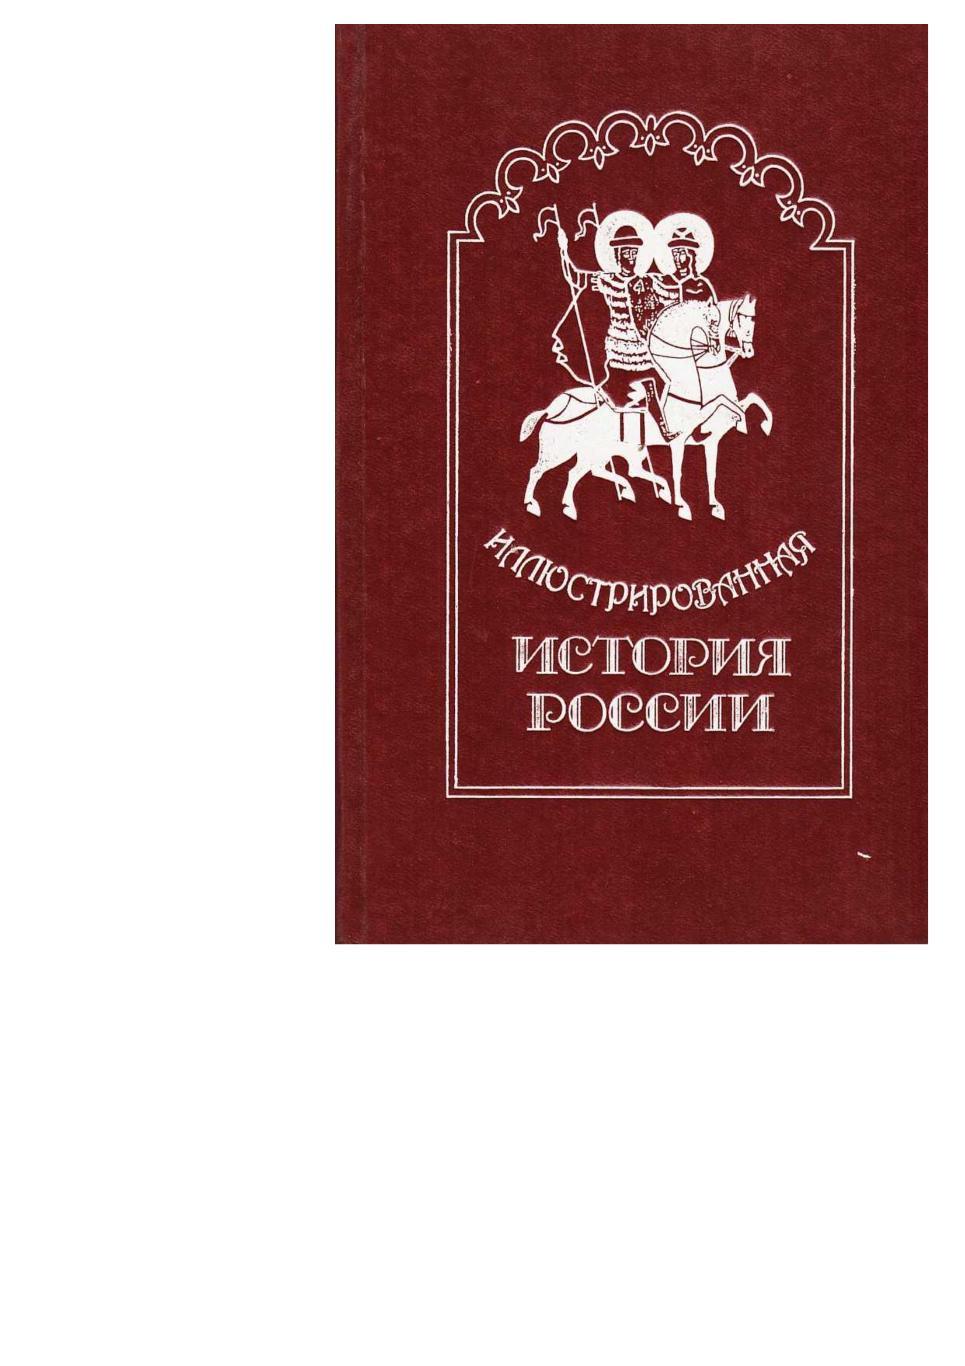 Иллюстрированная история России до Петра Великого. – СПб., 1993.